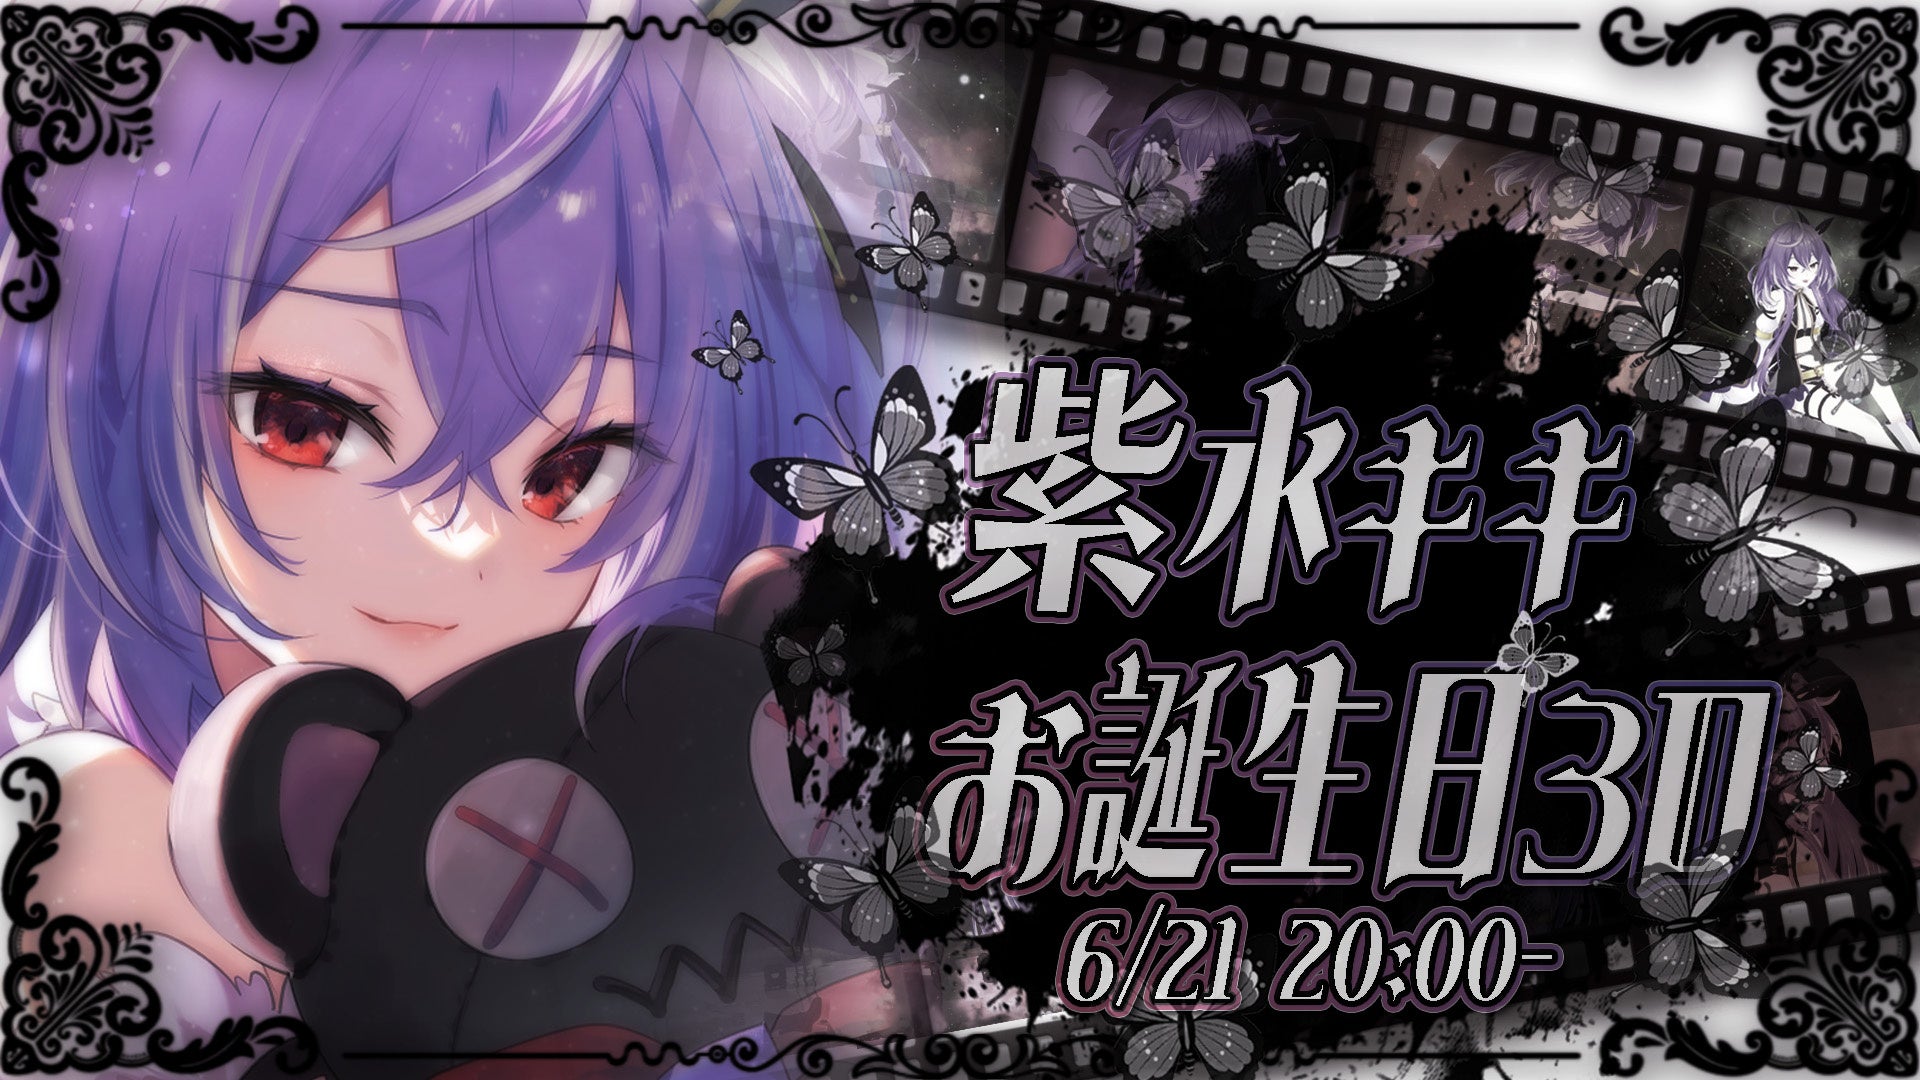 【ななしいんく】VTuber「紫水キキ」誕生日記念3D配信6/21(水)20:00-開催のお知らせ